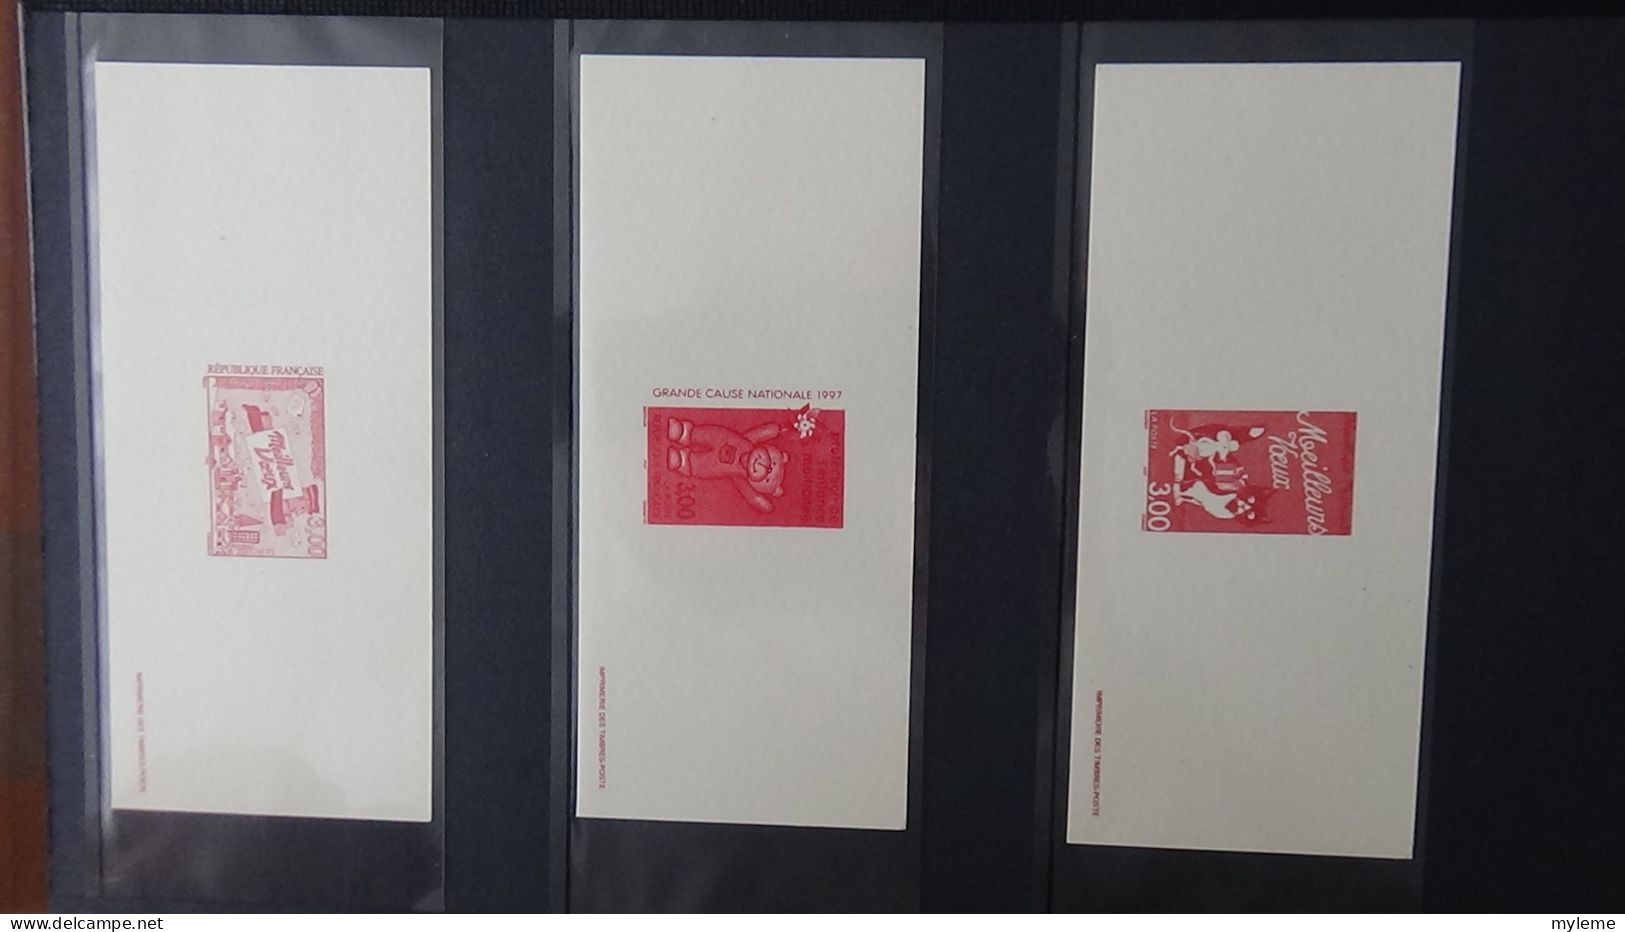 BF77 Gravures des timbres-poste de France sans son album d'origine   A saisir !!!